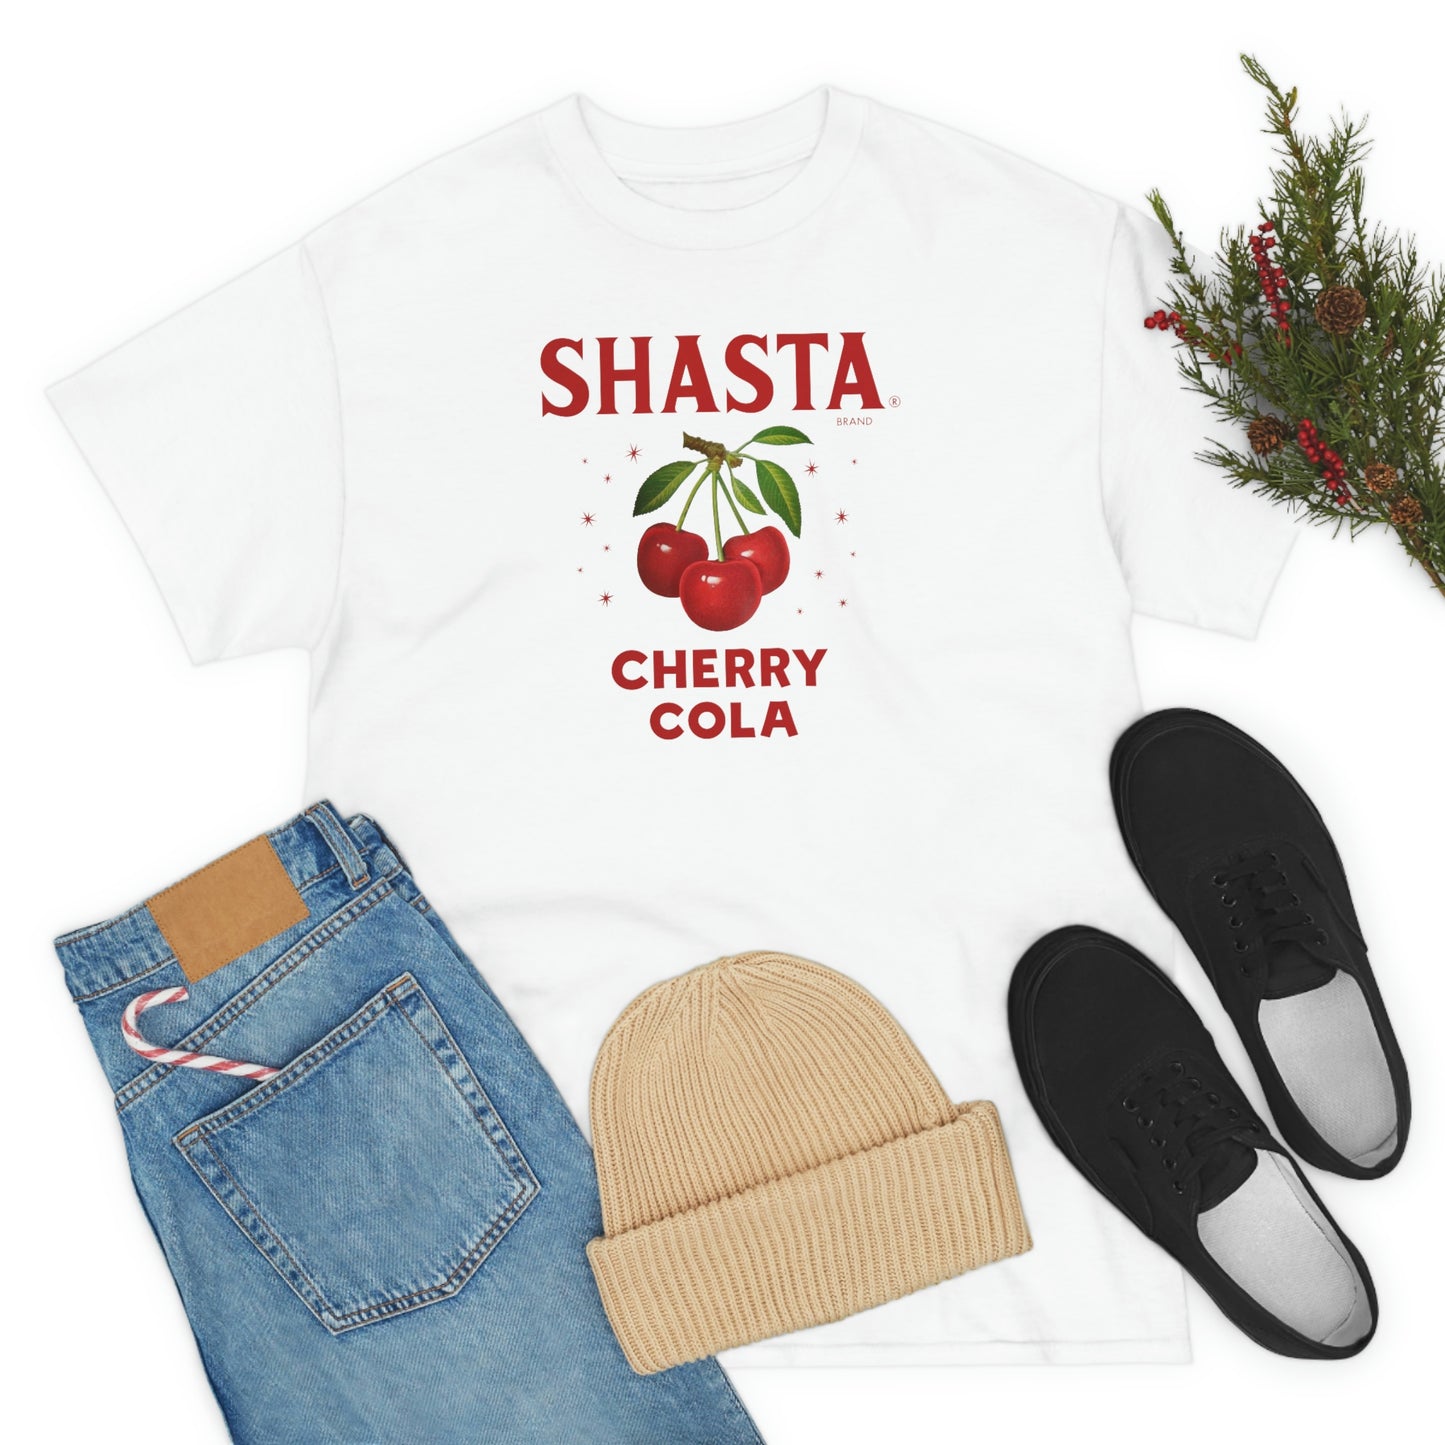 Shasta T-Shirt